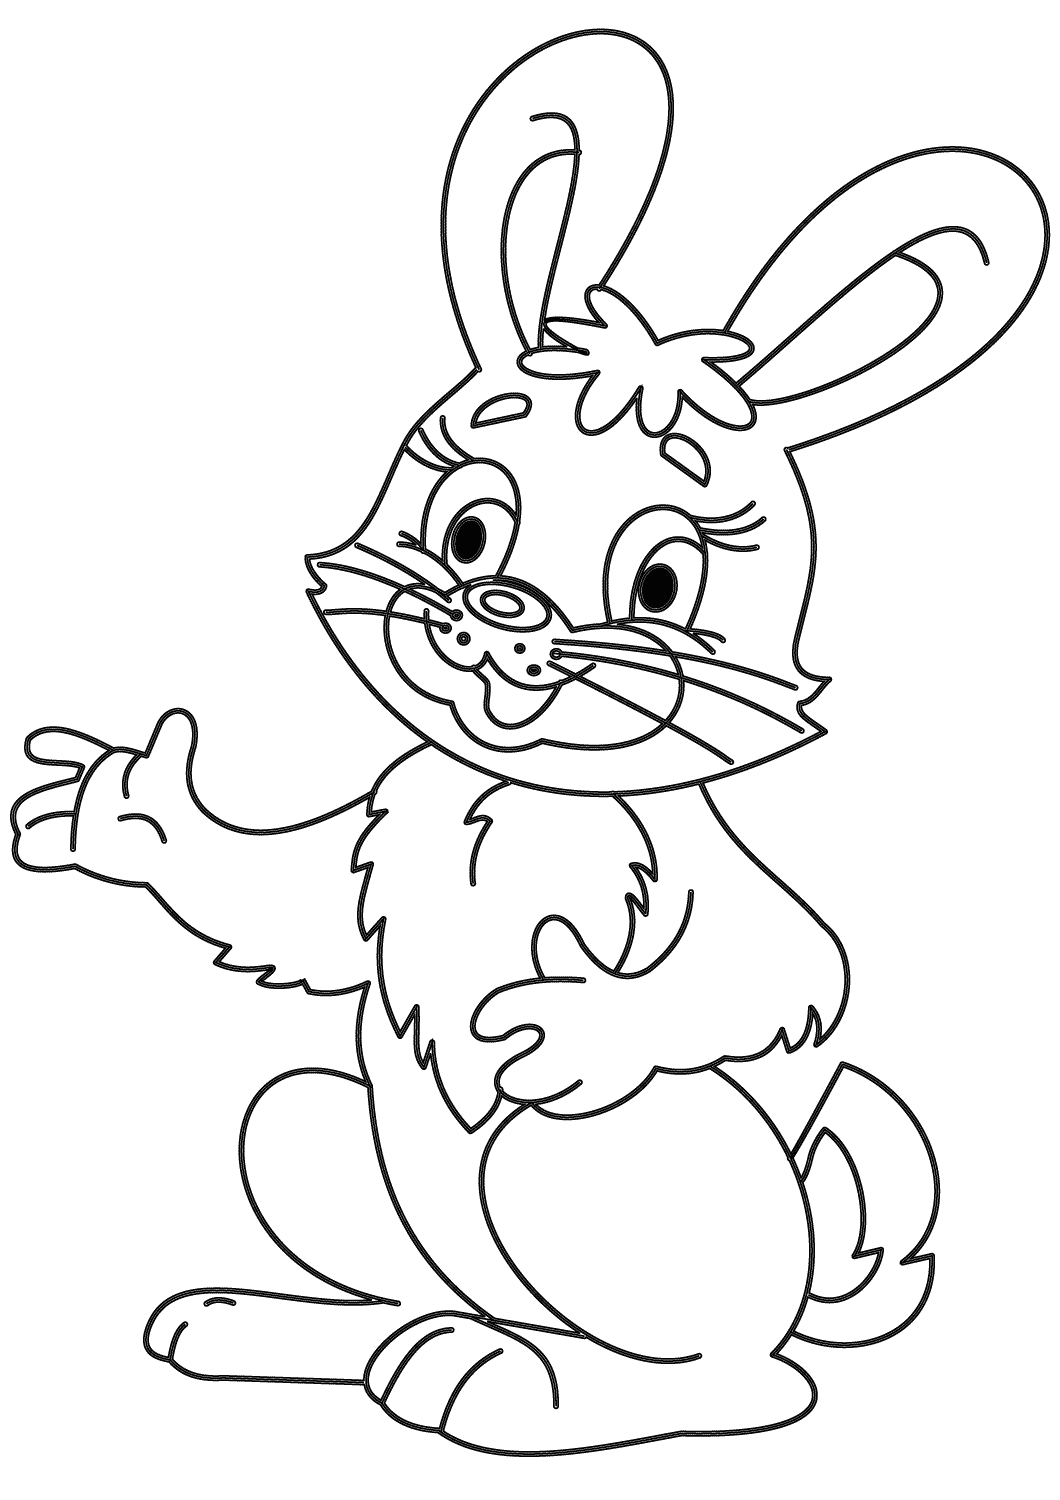 Coelhinha de desenho animado falando algo de Bunny